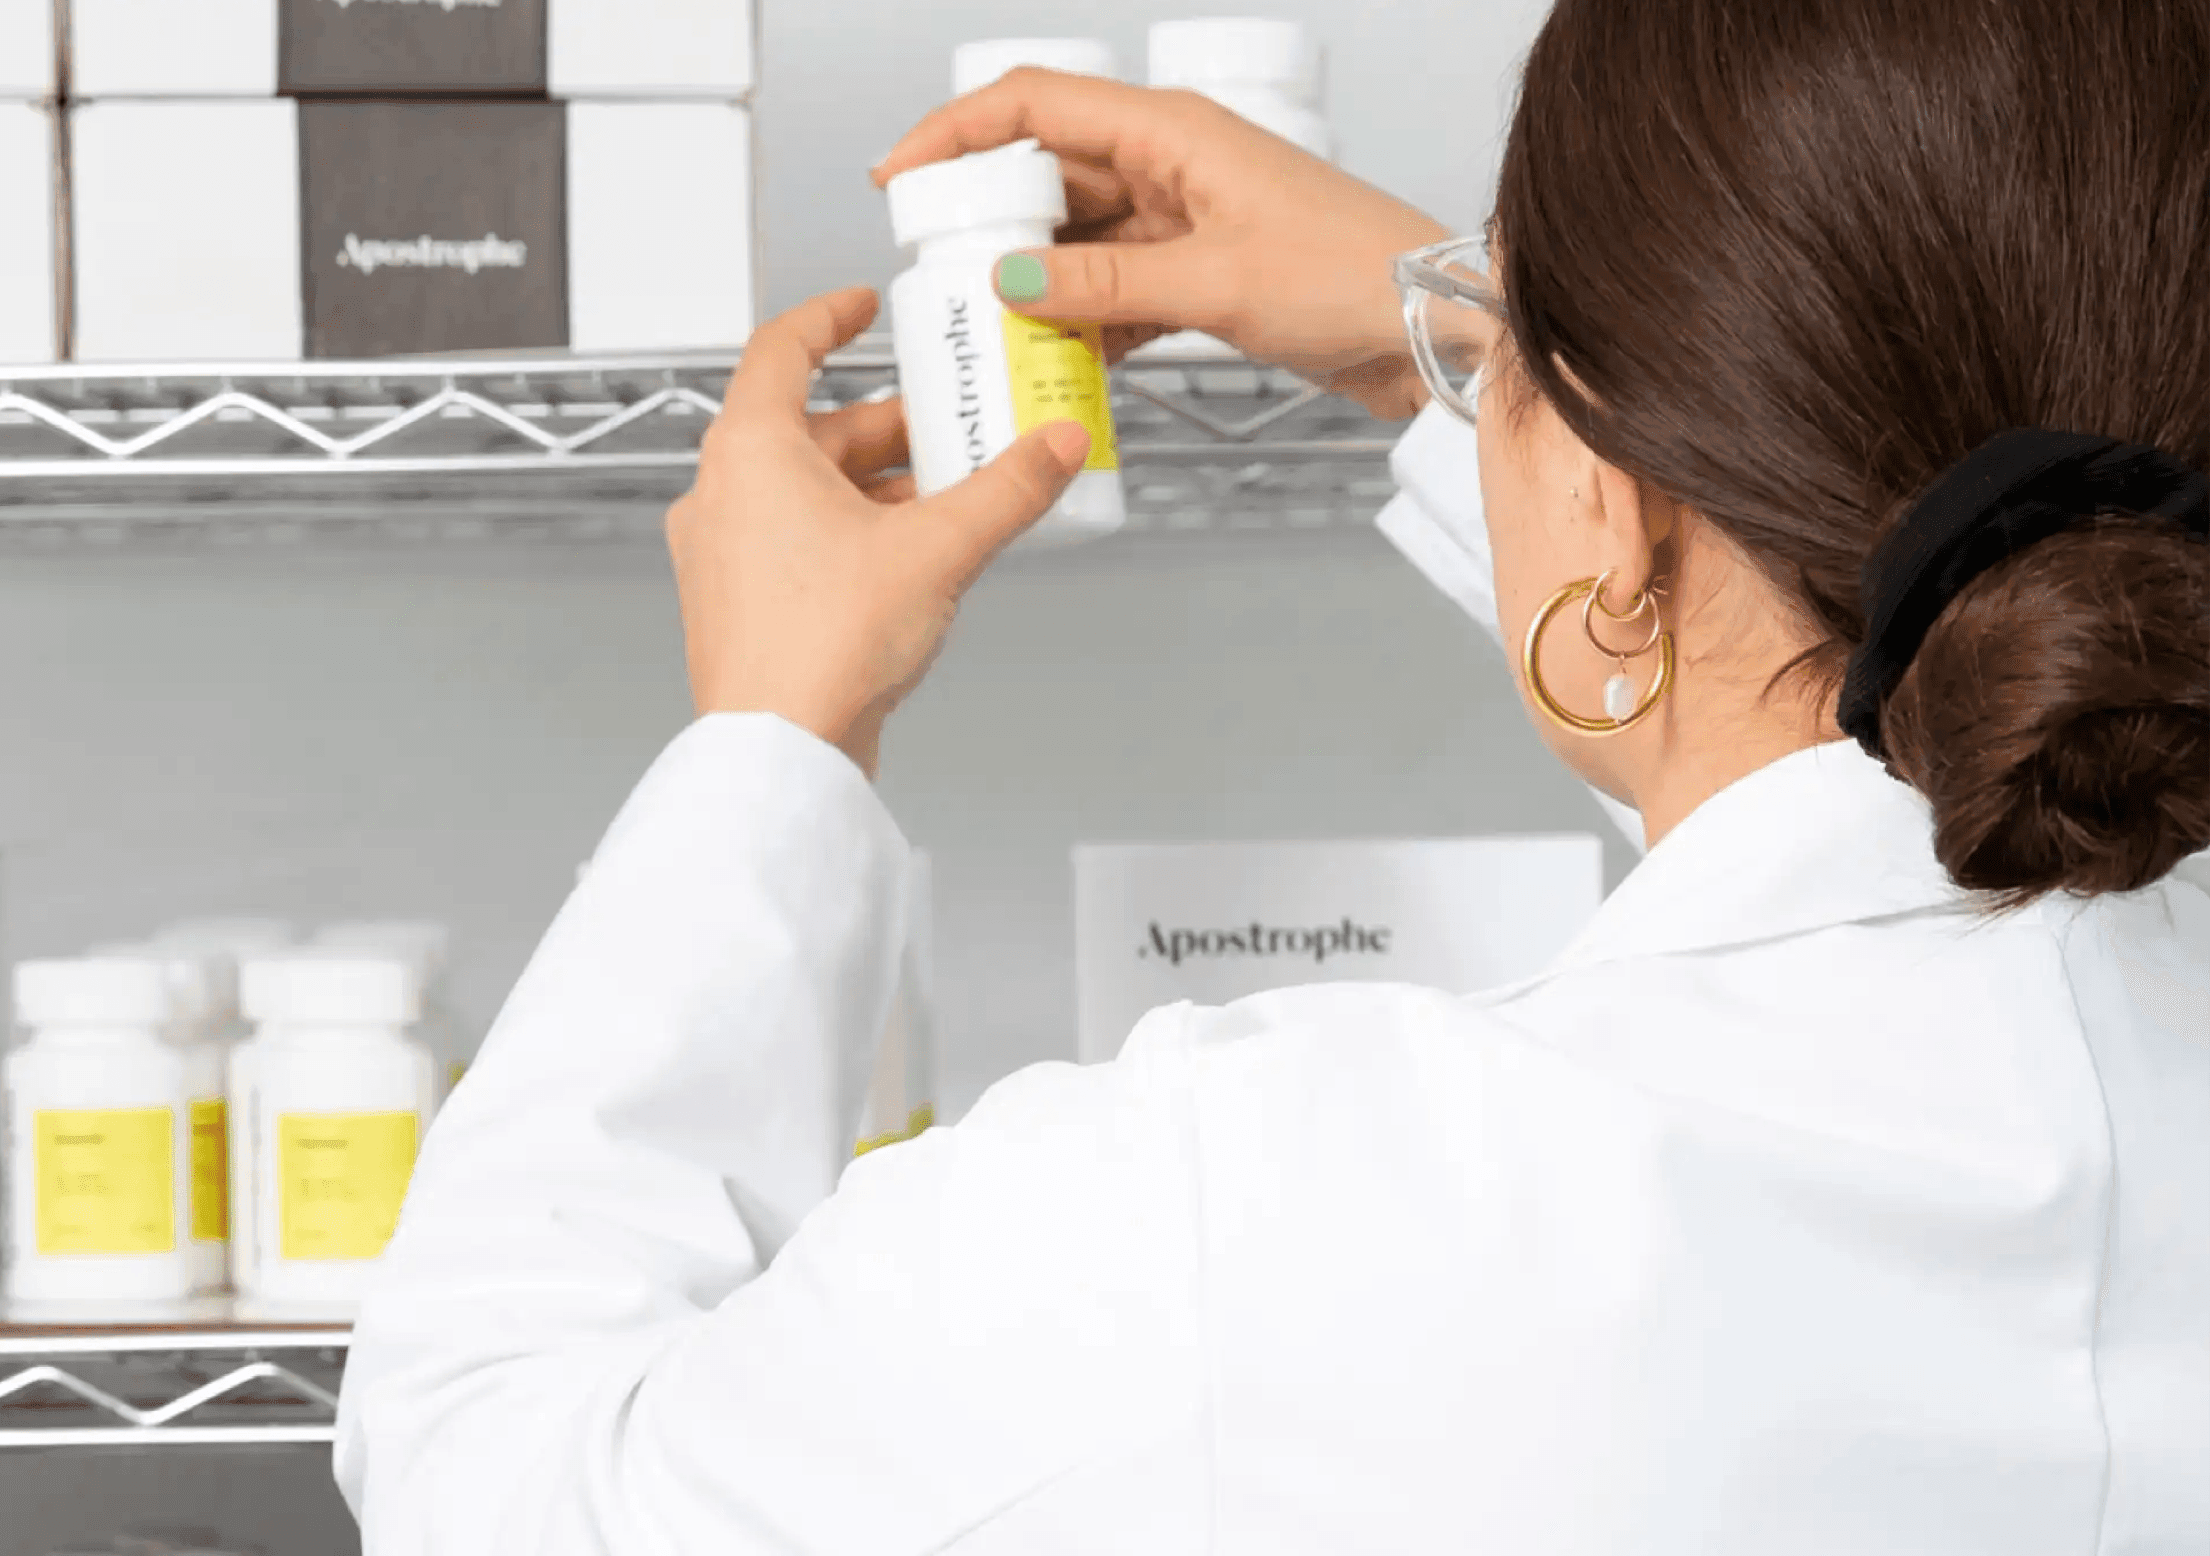 Apostrophe pharmacist checking bottles